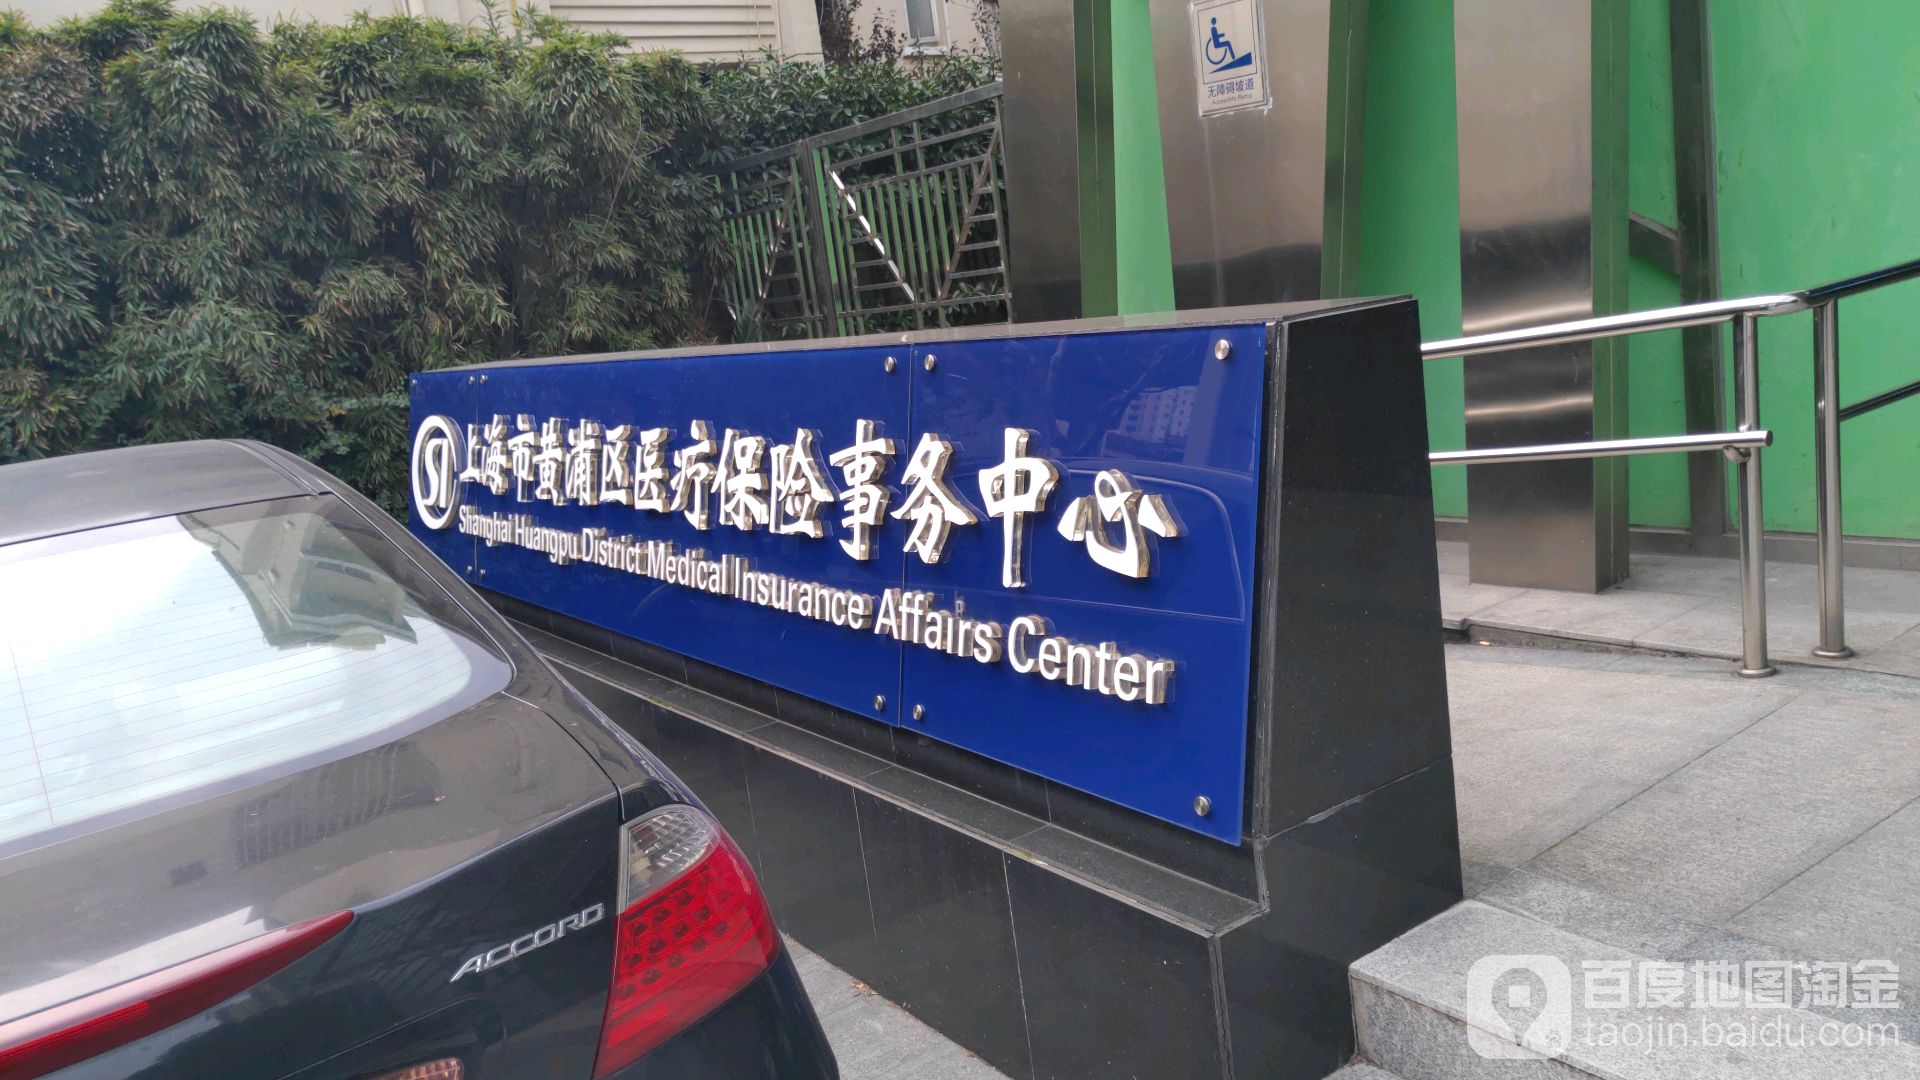 上海市黄浦区医疗保险事务中心 电话 路线 公交 地址 地图 预定 价格 团购 优惠 上海市黄浦区医疗保险事务中心在哪 怎么走 上海生活服务